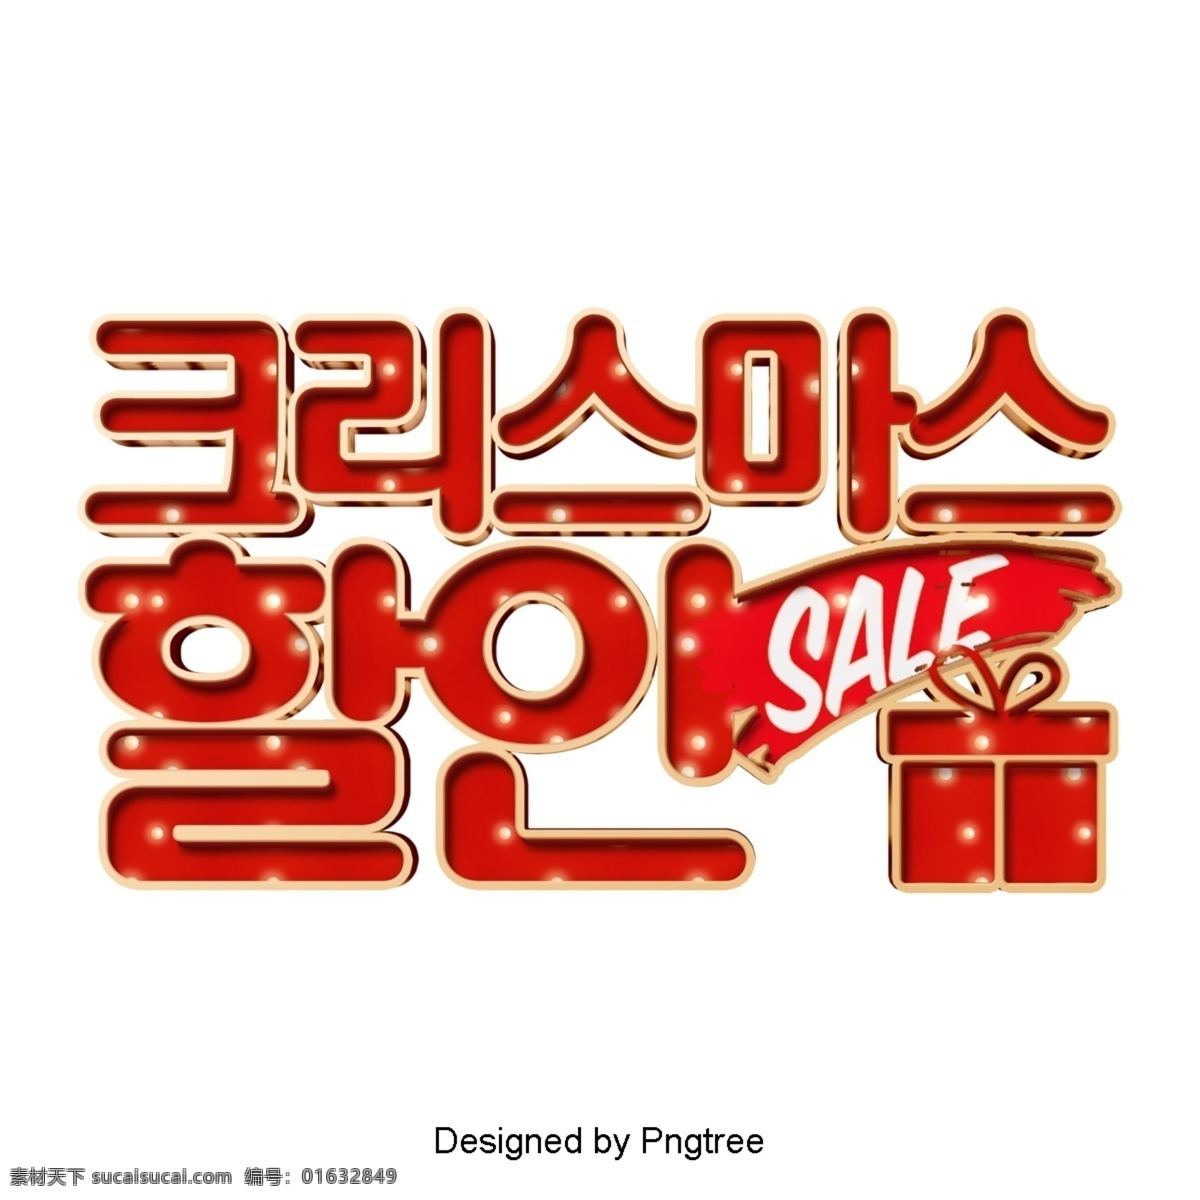 圣诞 折扣 促销 韩国 现场 装饰 字形 现代 时尚 色彩艺术 立体 灯泡 发光 圣诞节快乐